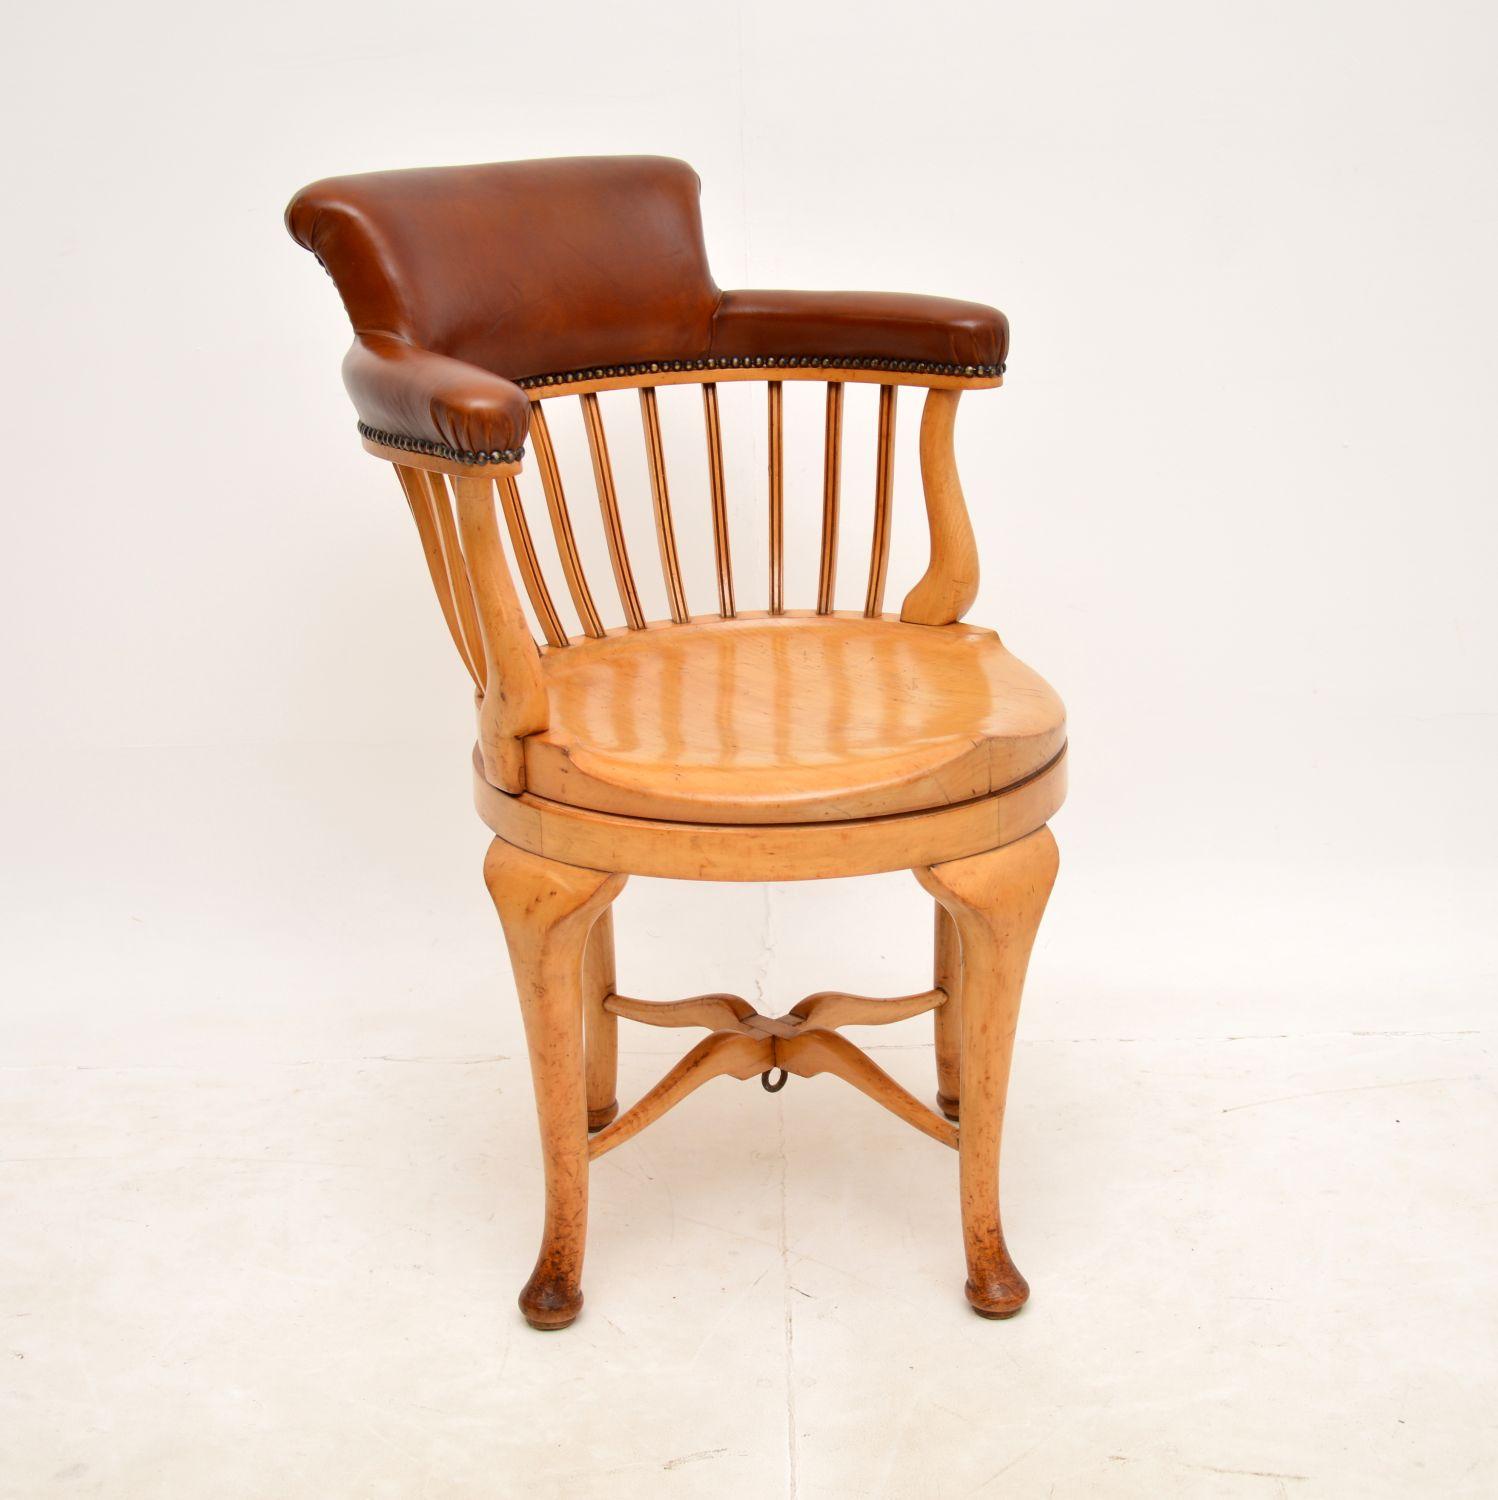 Superbe chaise de bureau victorienne ancienne et pivotante. Fabriqué en Angleterre, il date d'environ 1880-1900.

Le cadre est magnifiquement fabriqué en frêne massif, avec un dossier et des accoudoirs en cuir rembourré. Il est très robuste et